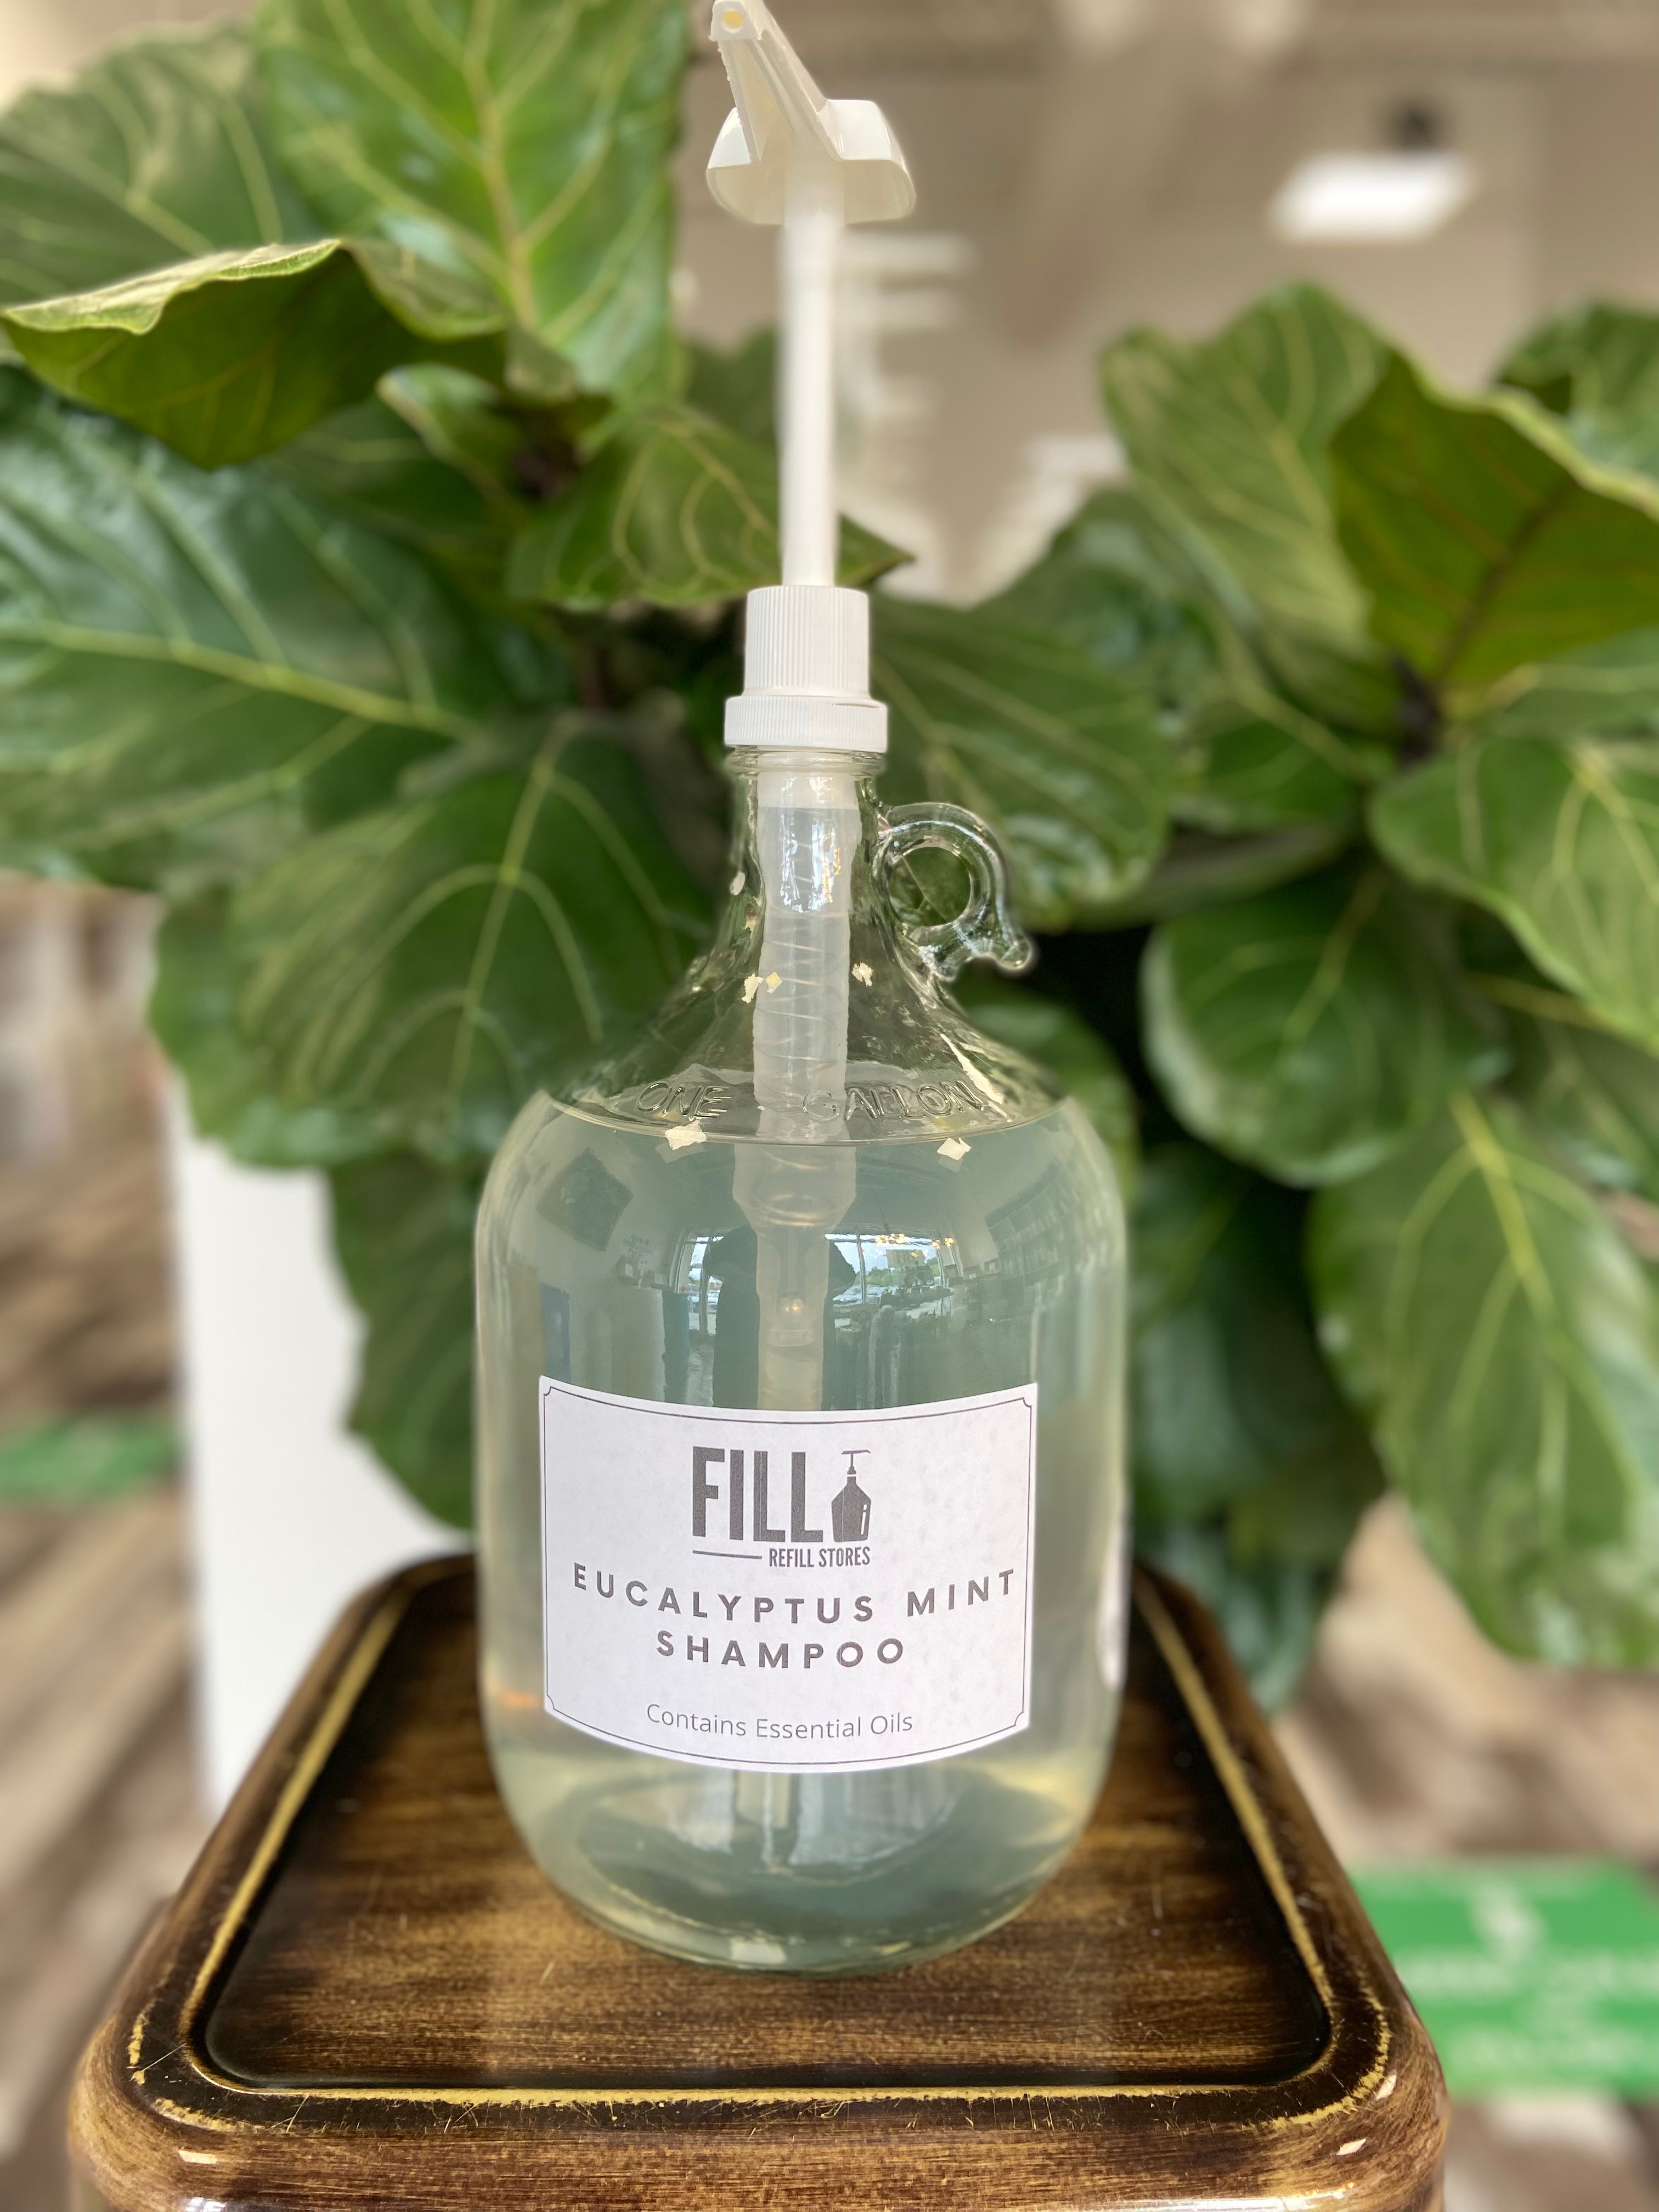 FILL- Eucalyptus and Mint Shampoo